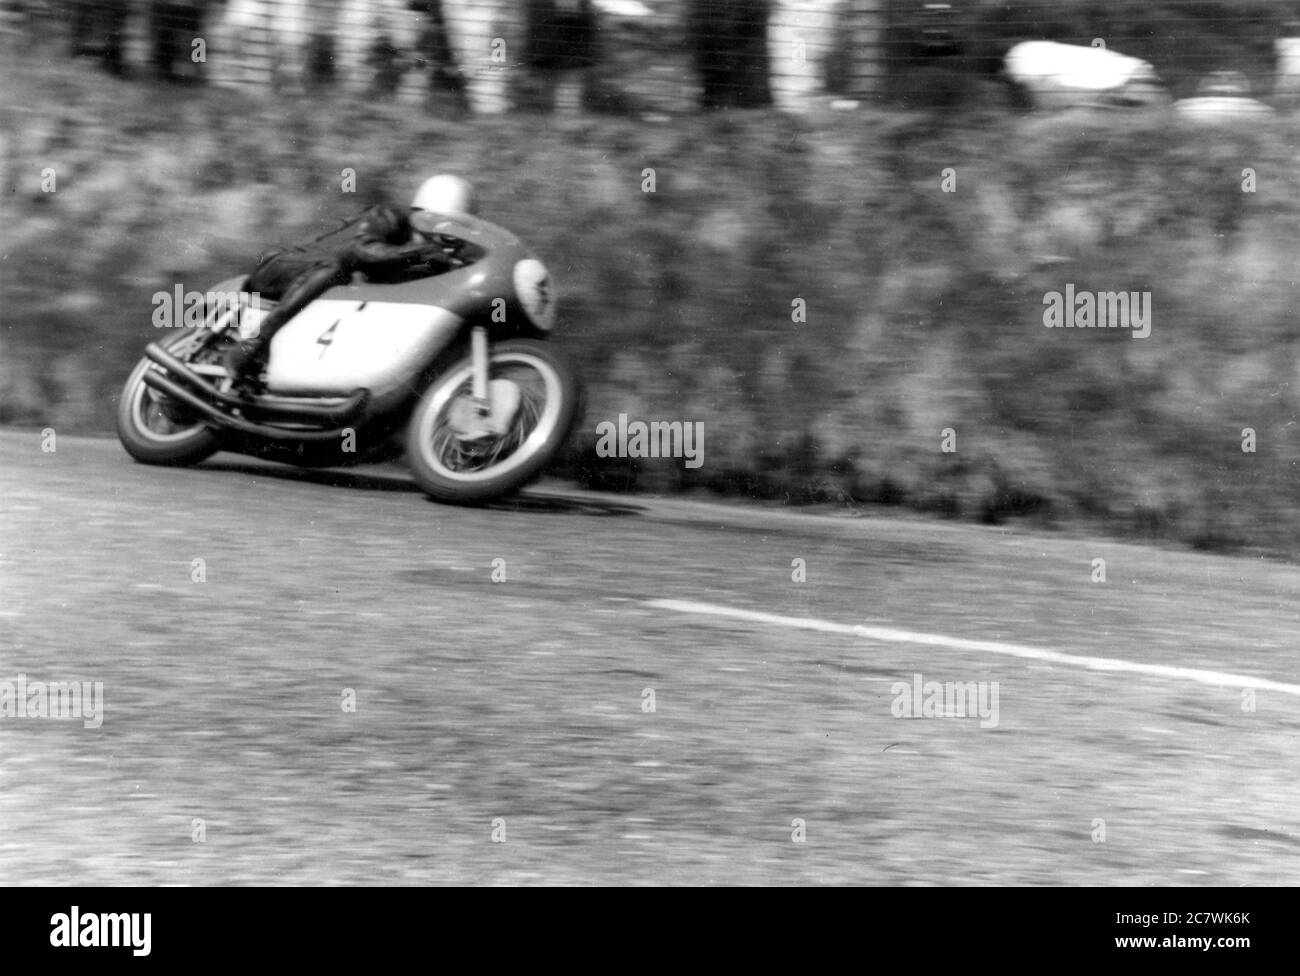 Der Rennmotorradfahrer Gary Hocking rundet eine Kurve mit Geschwindigkeit (Ereignis unbekannt). Gary Stuart Hocking (30. September 1937 – 21. Dezember 1962) war ein Grand Prix Motorrad-Weltmeister, der zwischen 1958 und 1962 antrat. Stockfoto